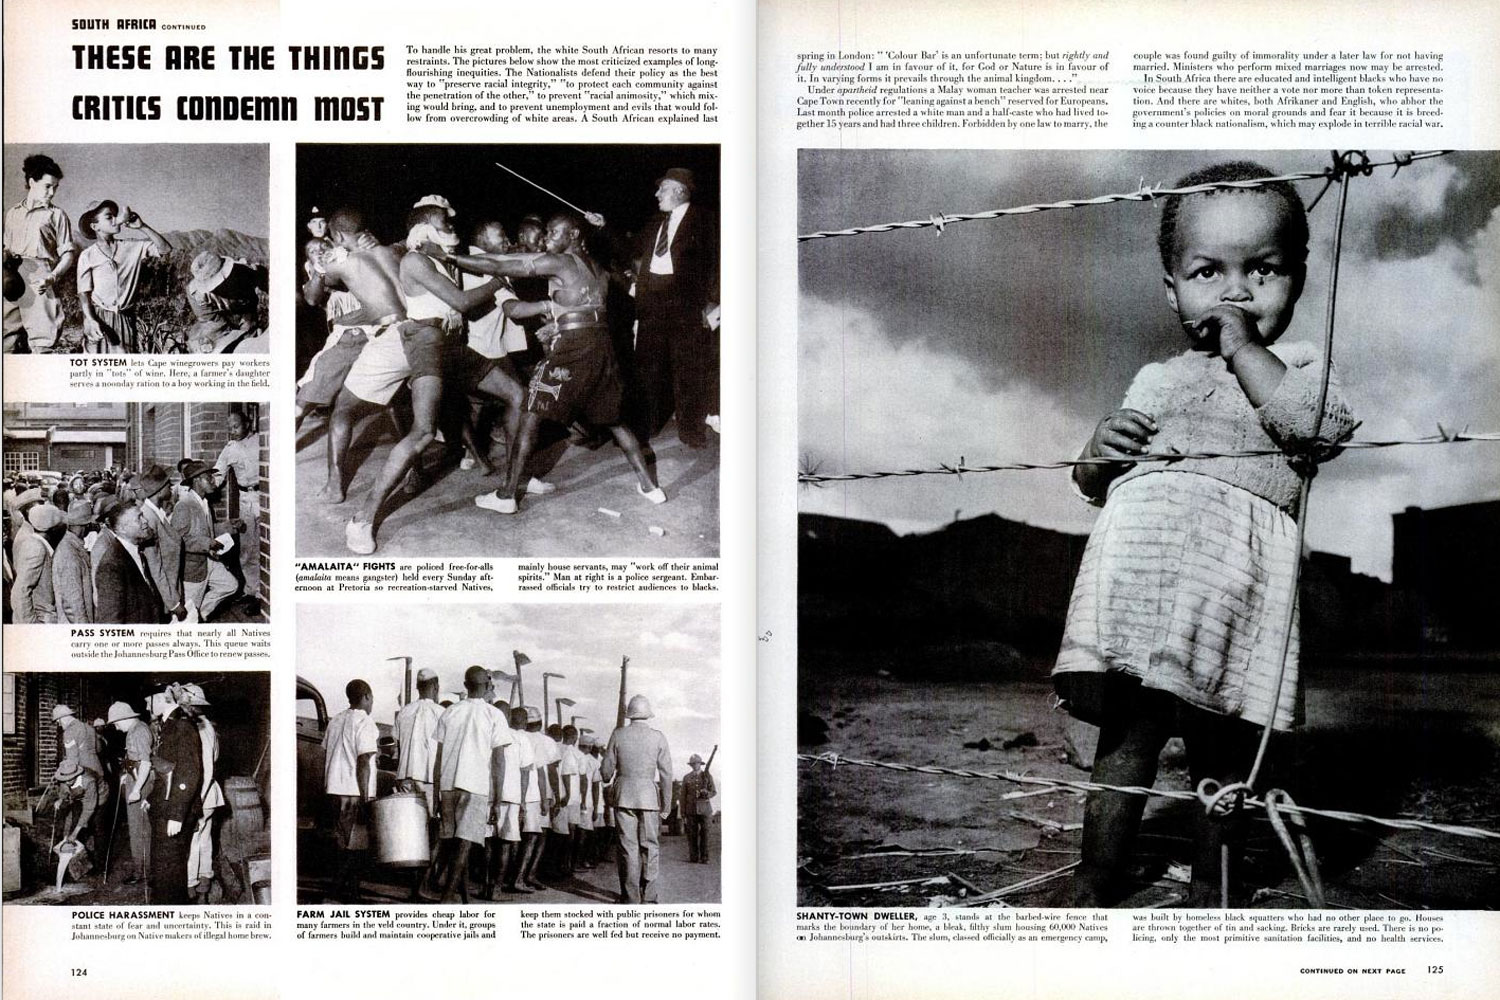 September 18, 1950, LIFE Magazine